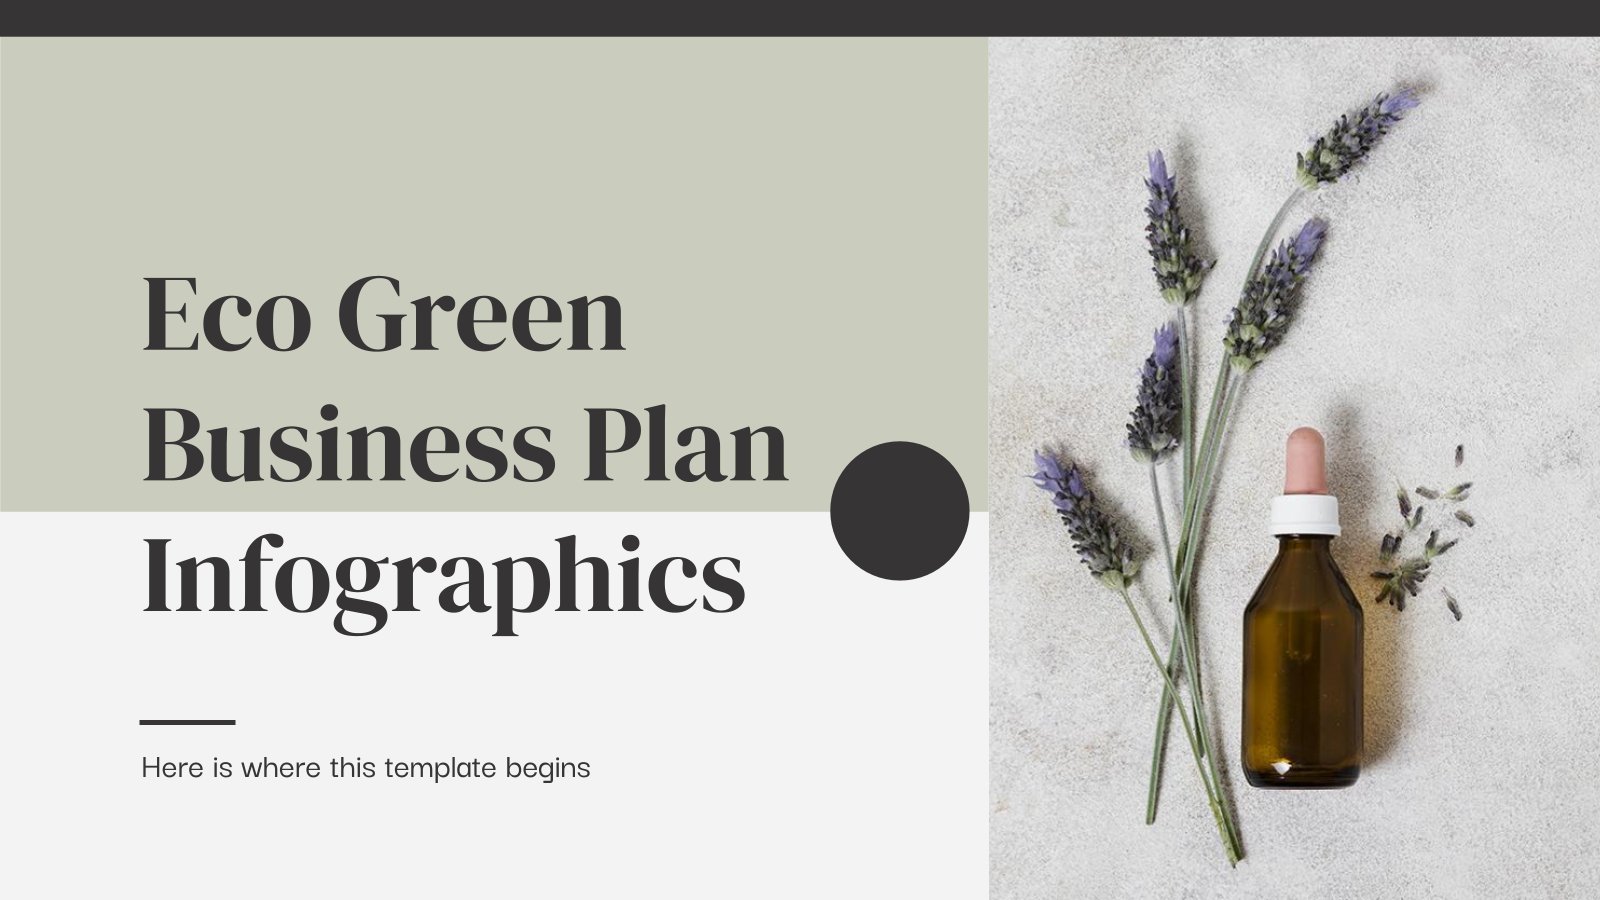 Plantilla de presentación Infografías para plan de negocio ecológico